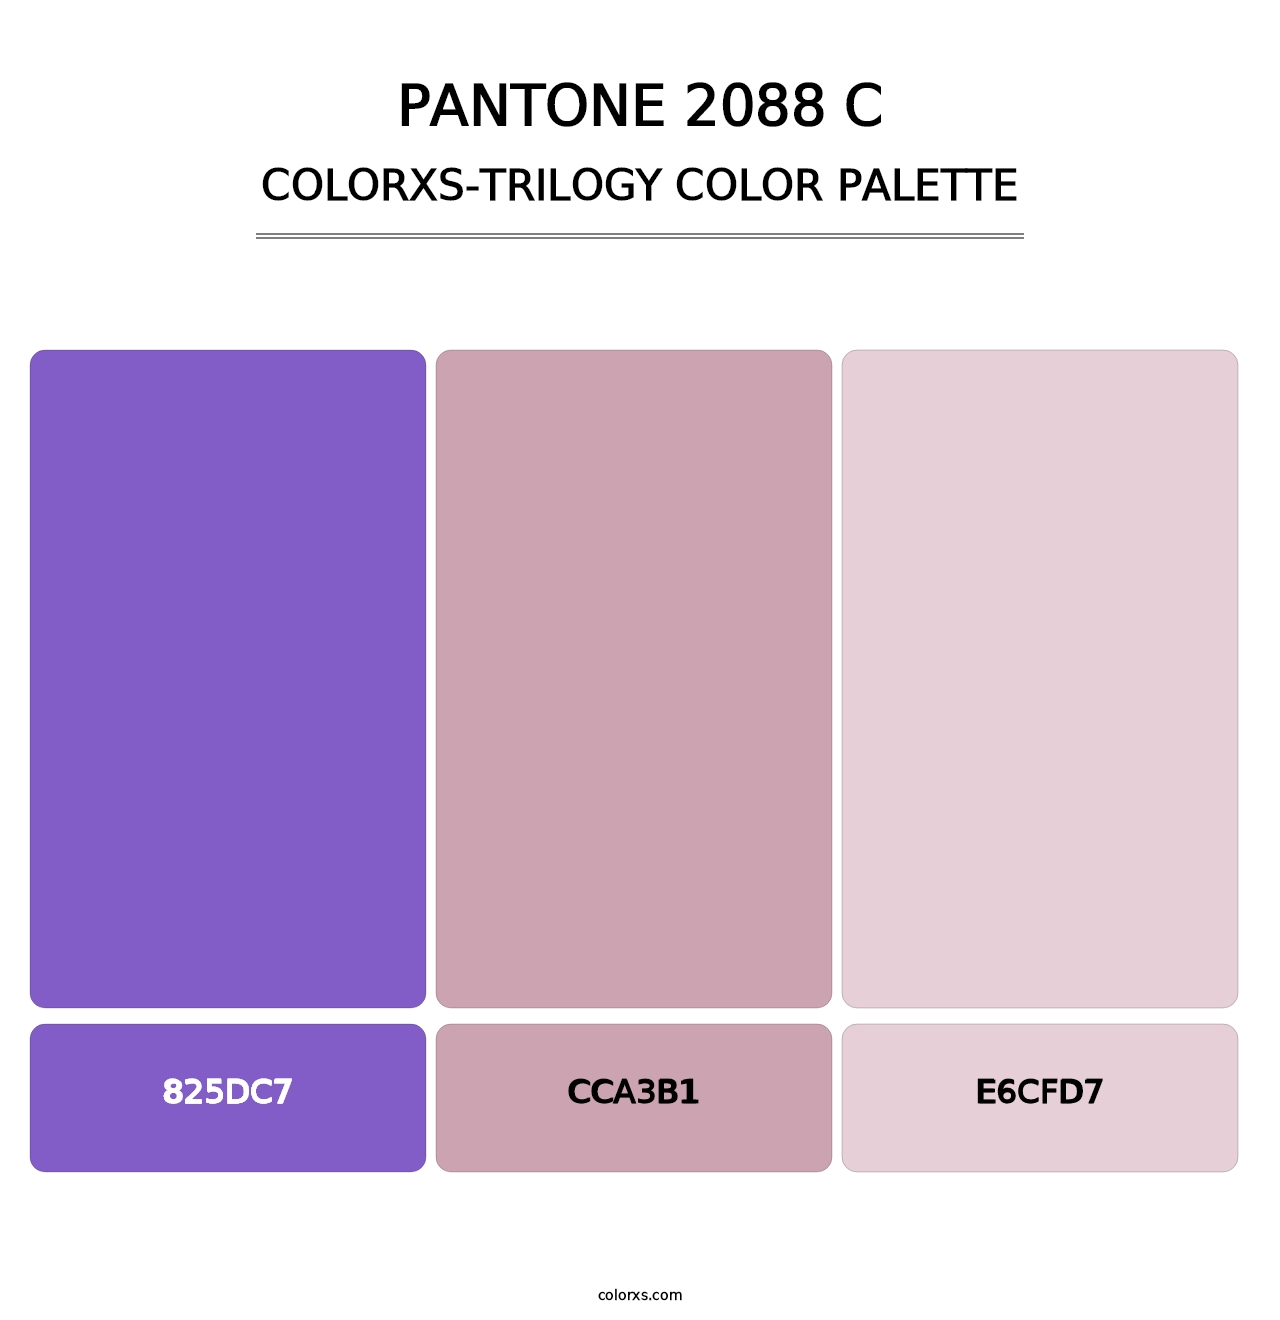 PANTONE 2088 C - Colorxs Trilogy Palette